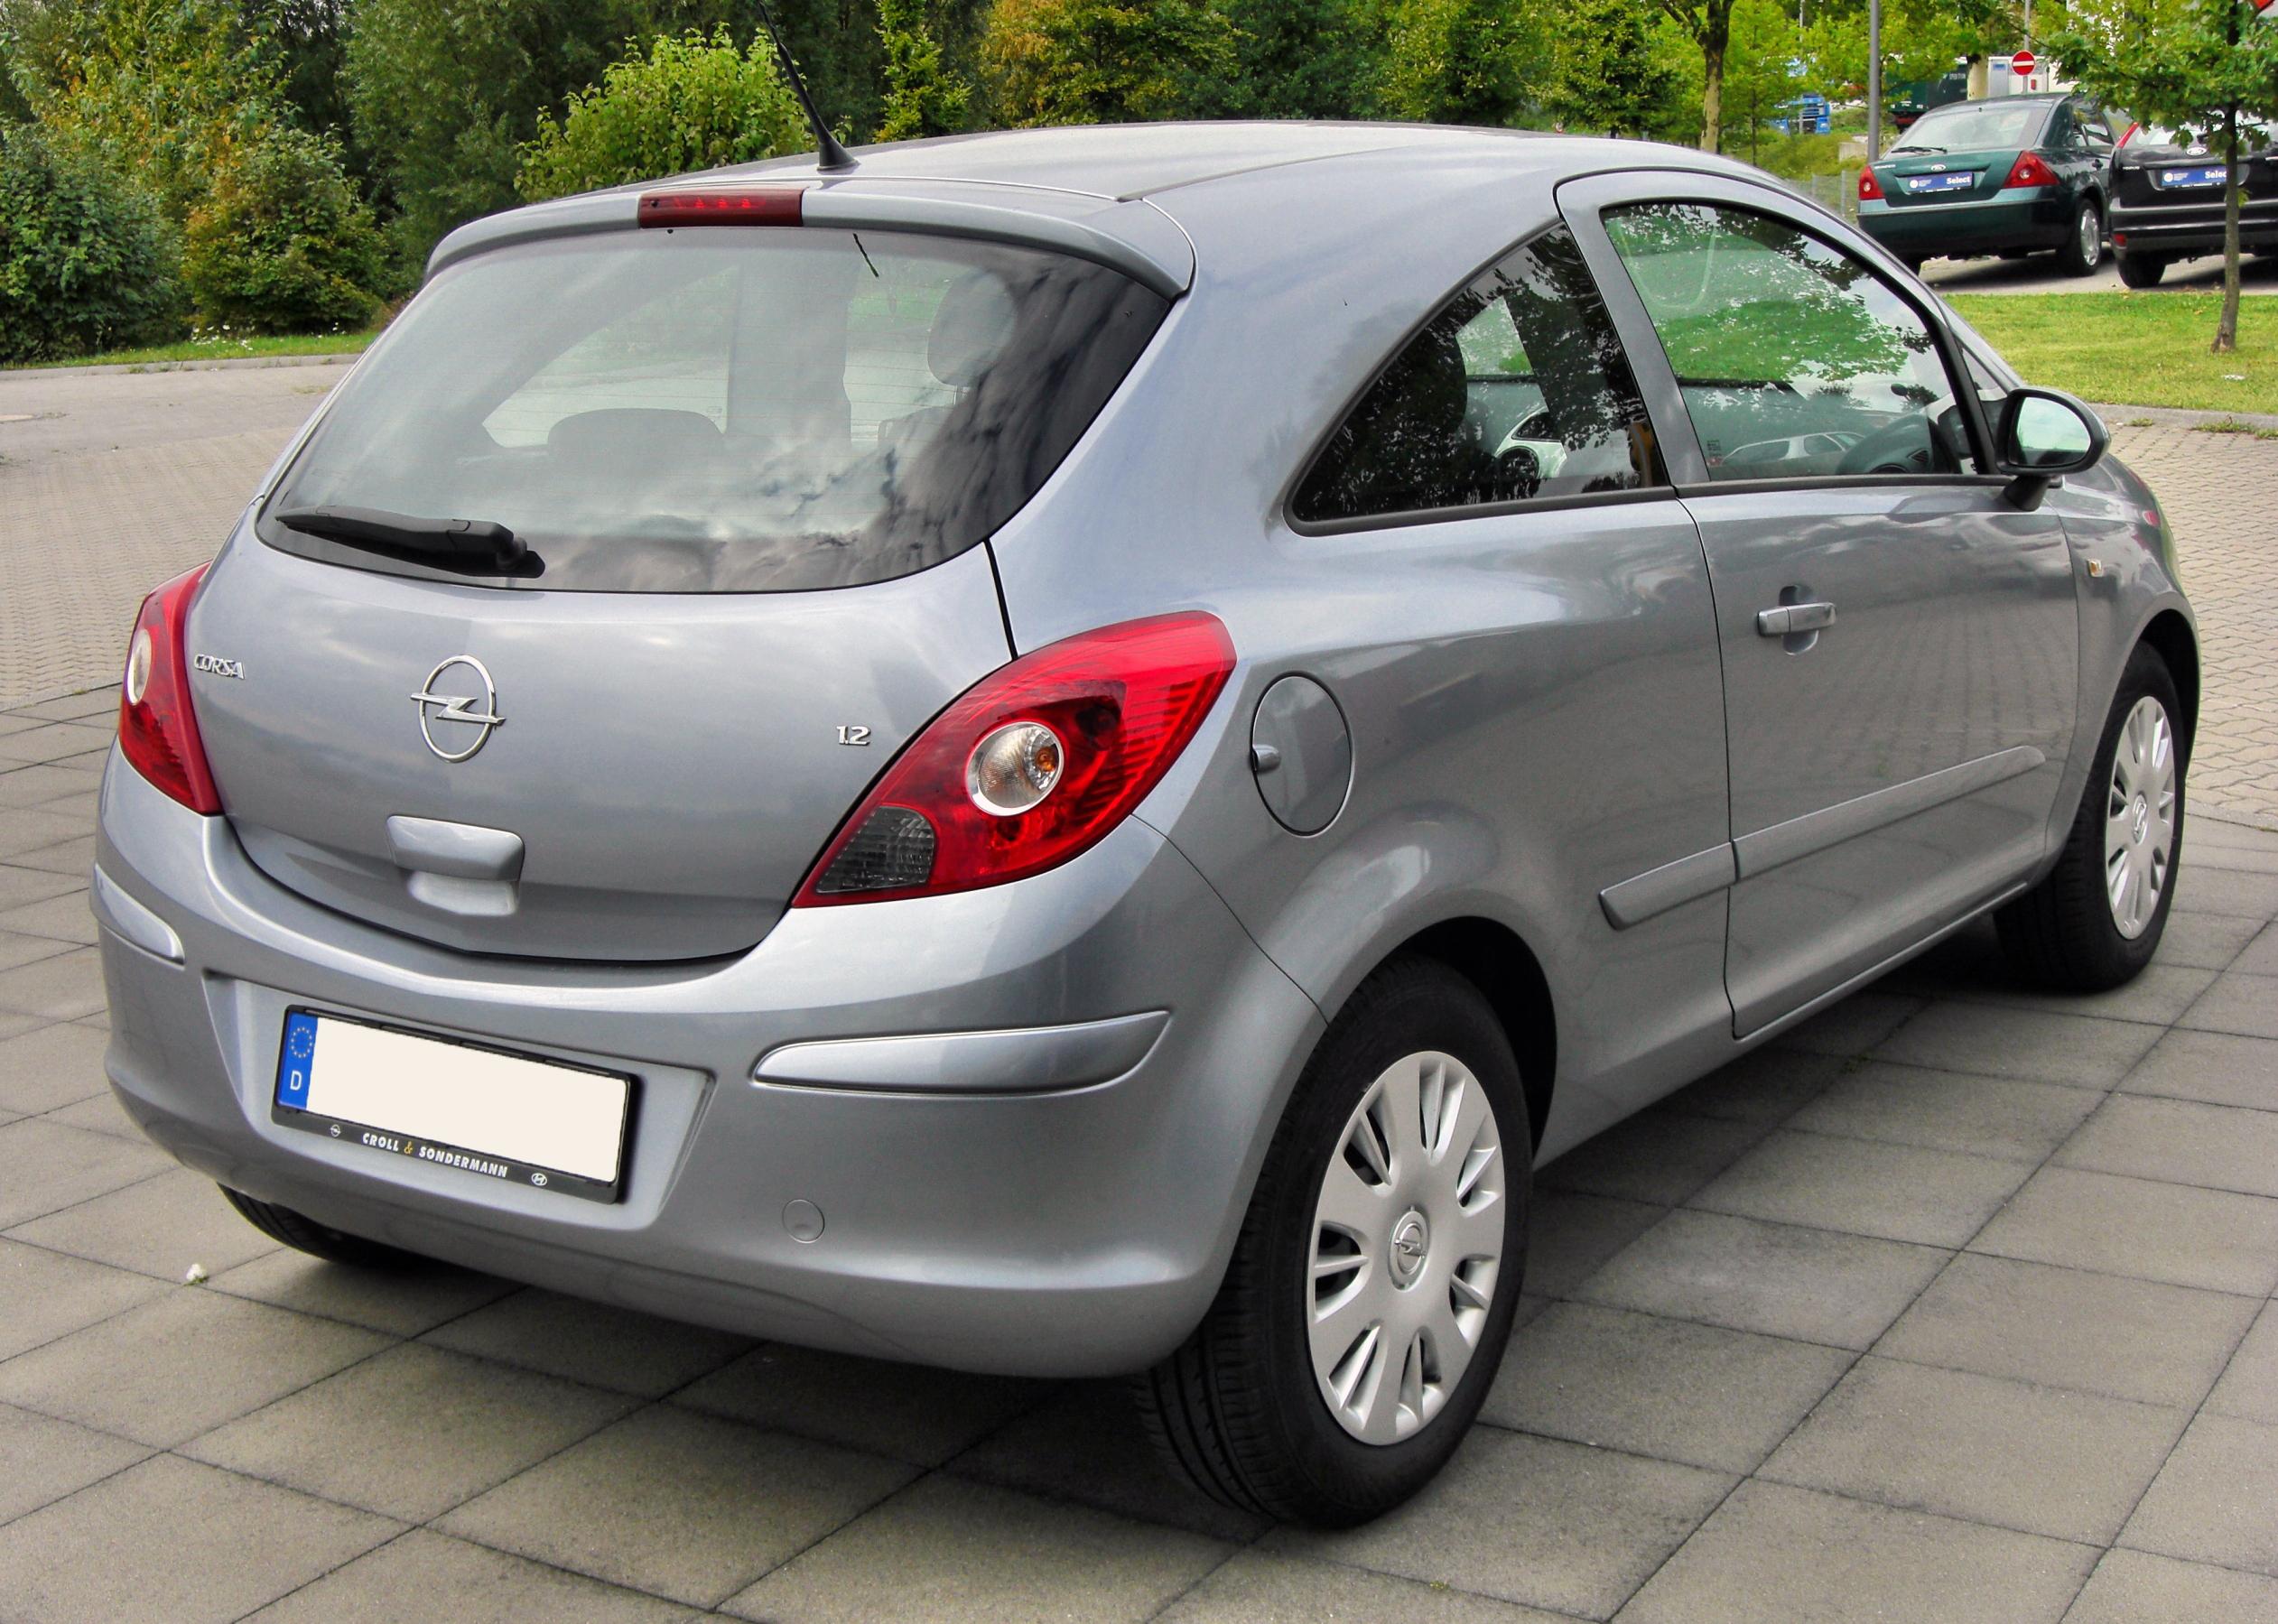 File:Opel Corsa D 1.4 rear 20100912.jpg - Wikimedia Commons